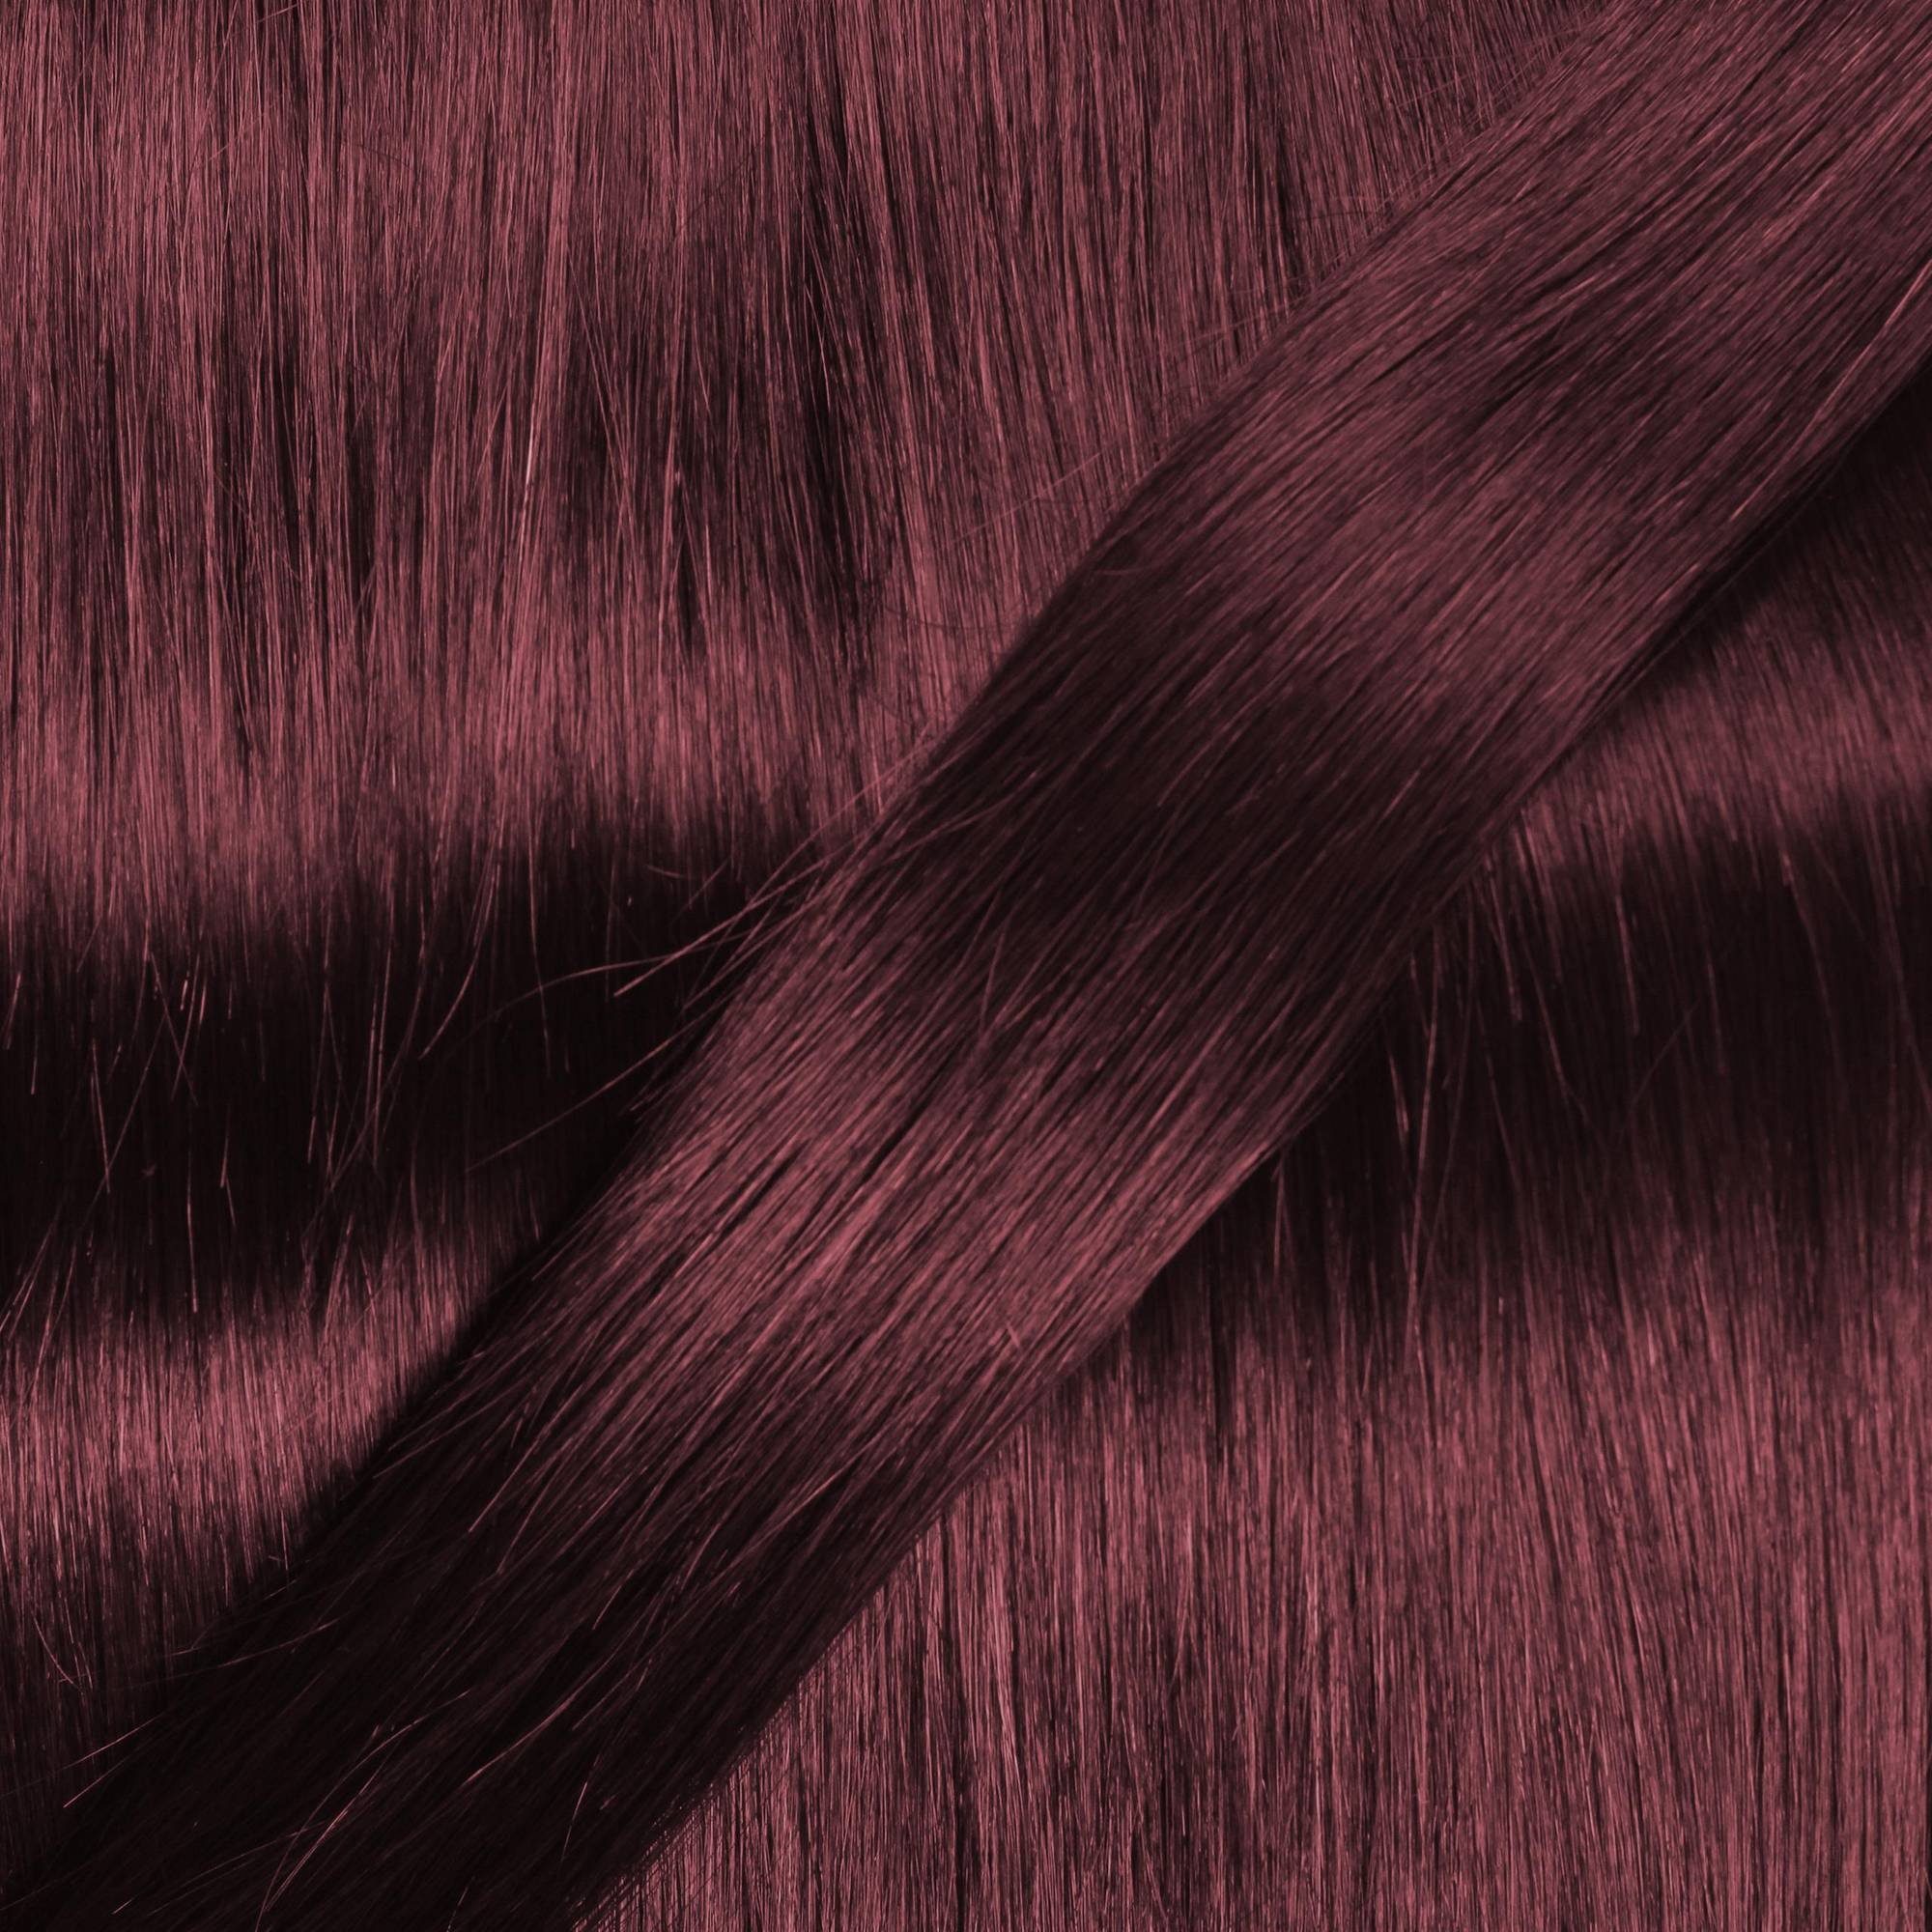 Extensions hair2heart Violett #55/66 Hellbraun Tape 40cm glatt Echthaar-Extension